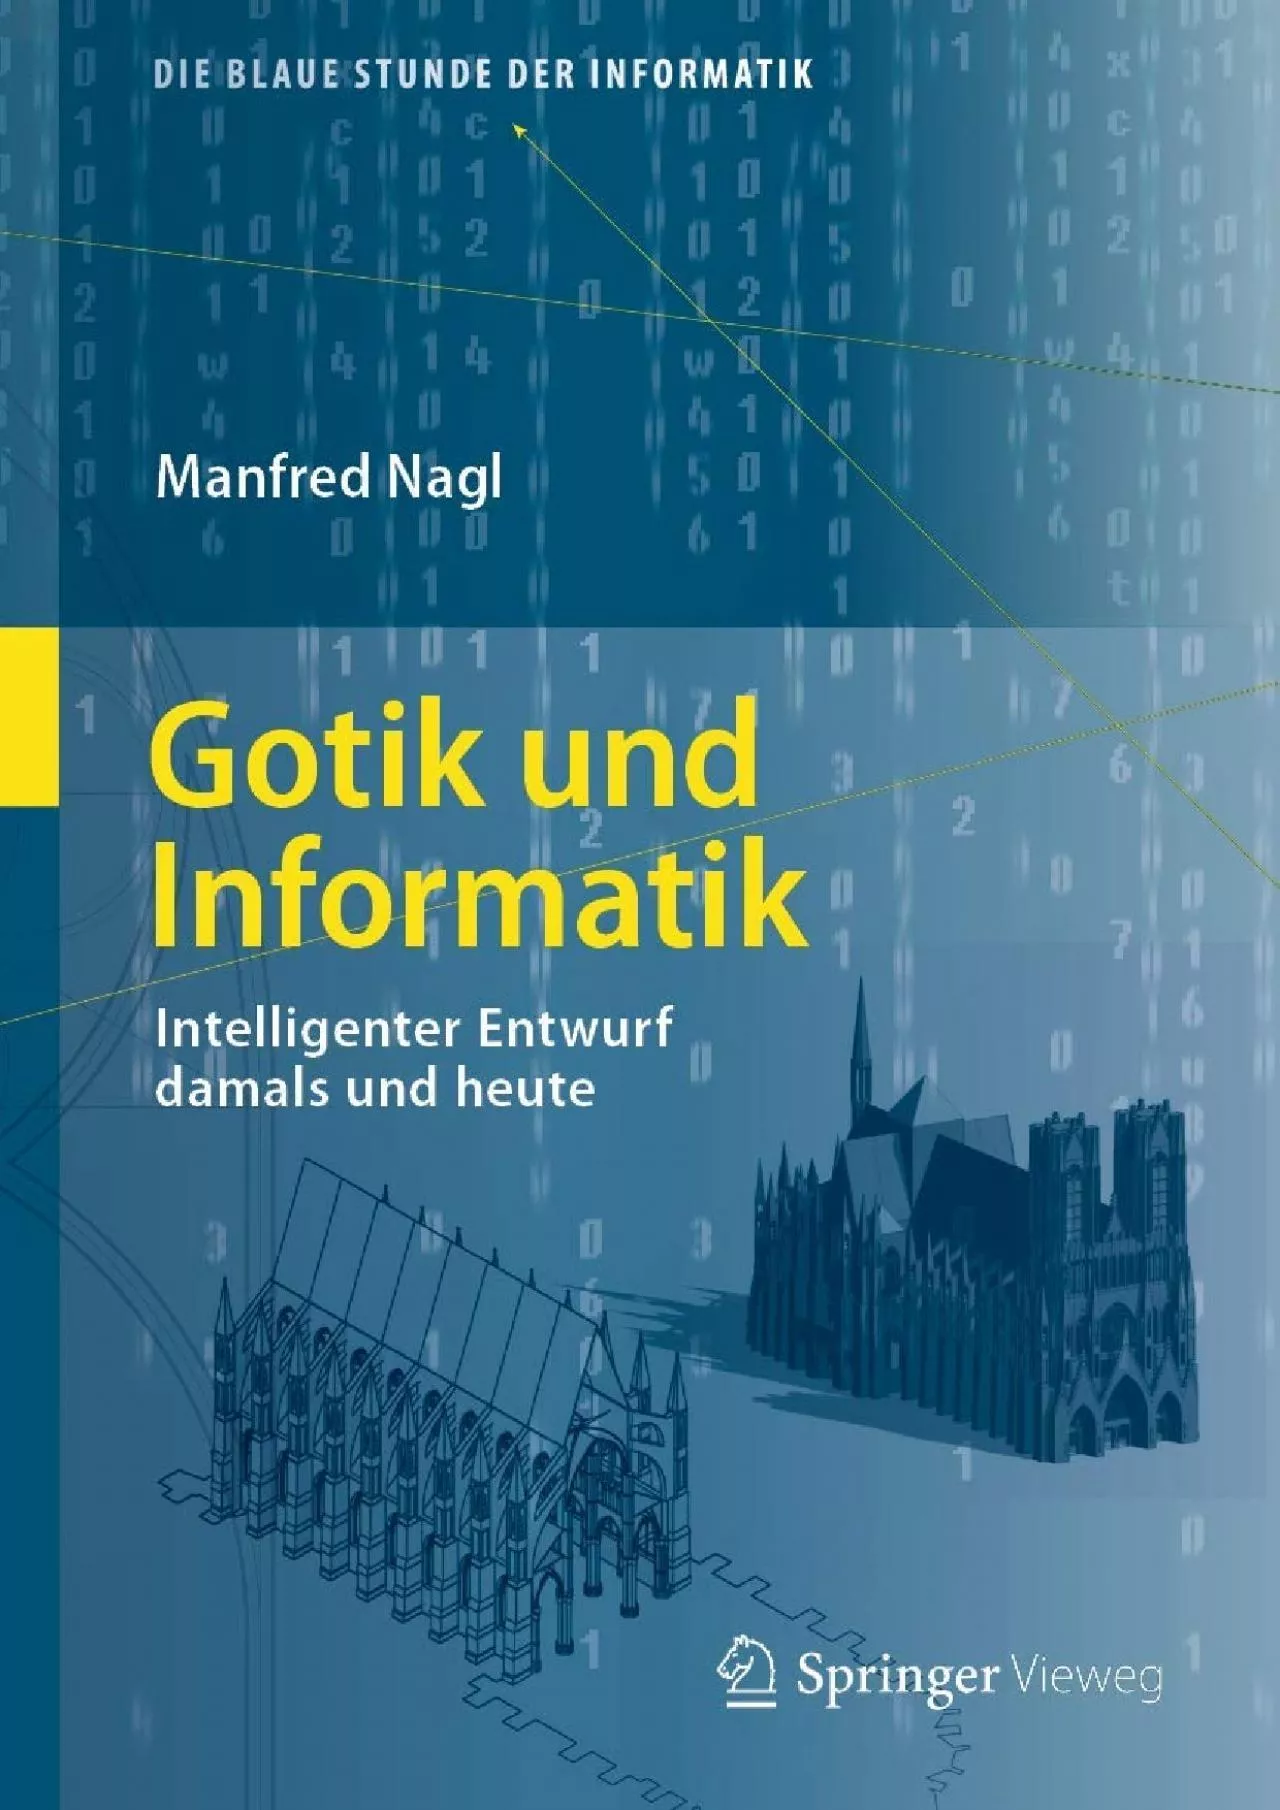 [DOWLOAD]-Gotik und Informatik: Intelligenter Entwurf damals und heute (Die blaue Stunde